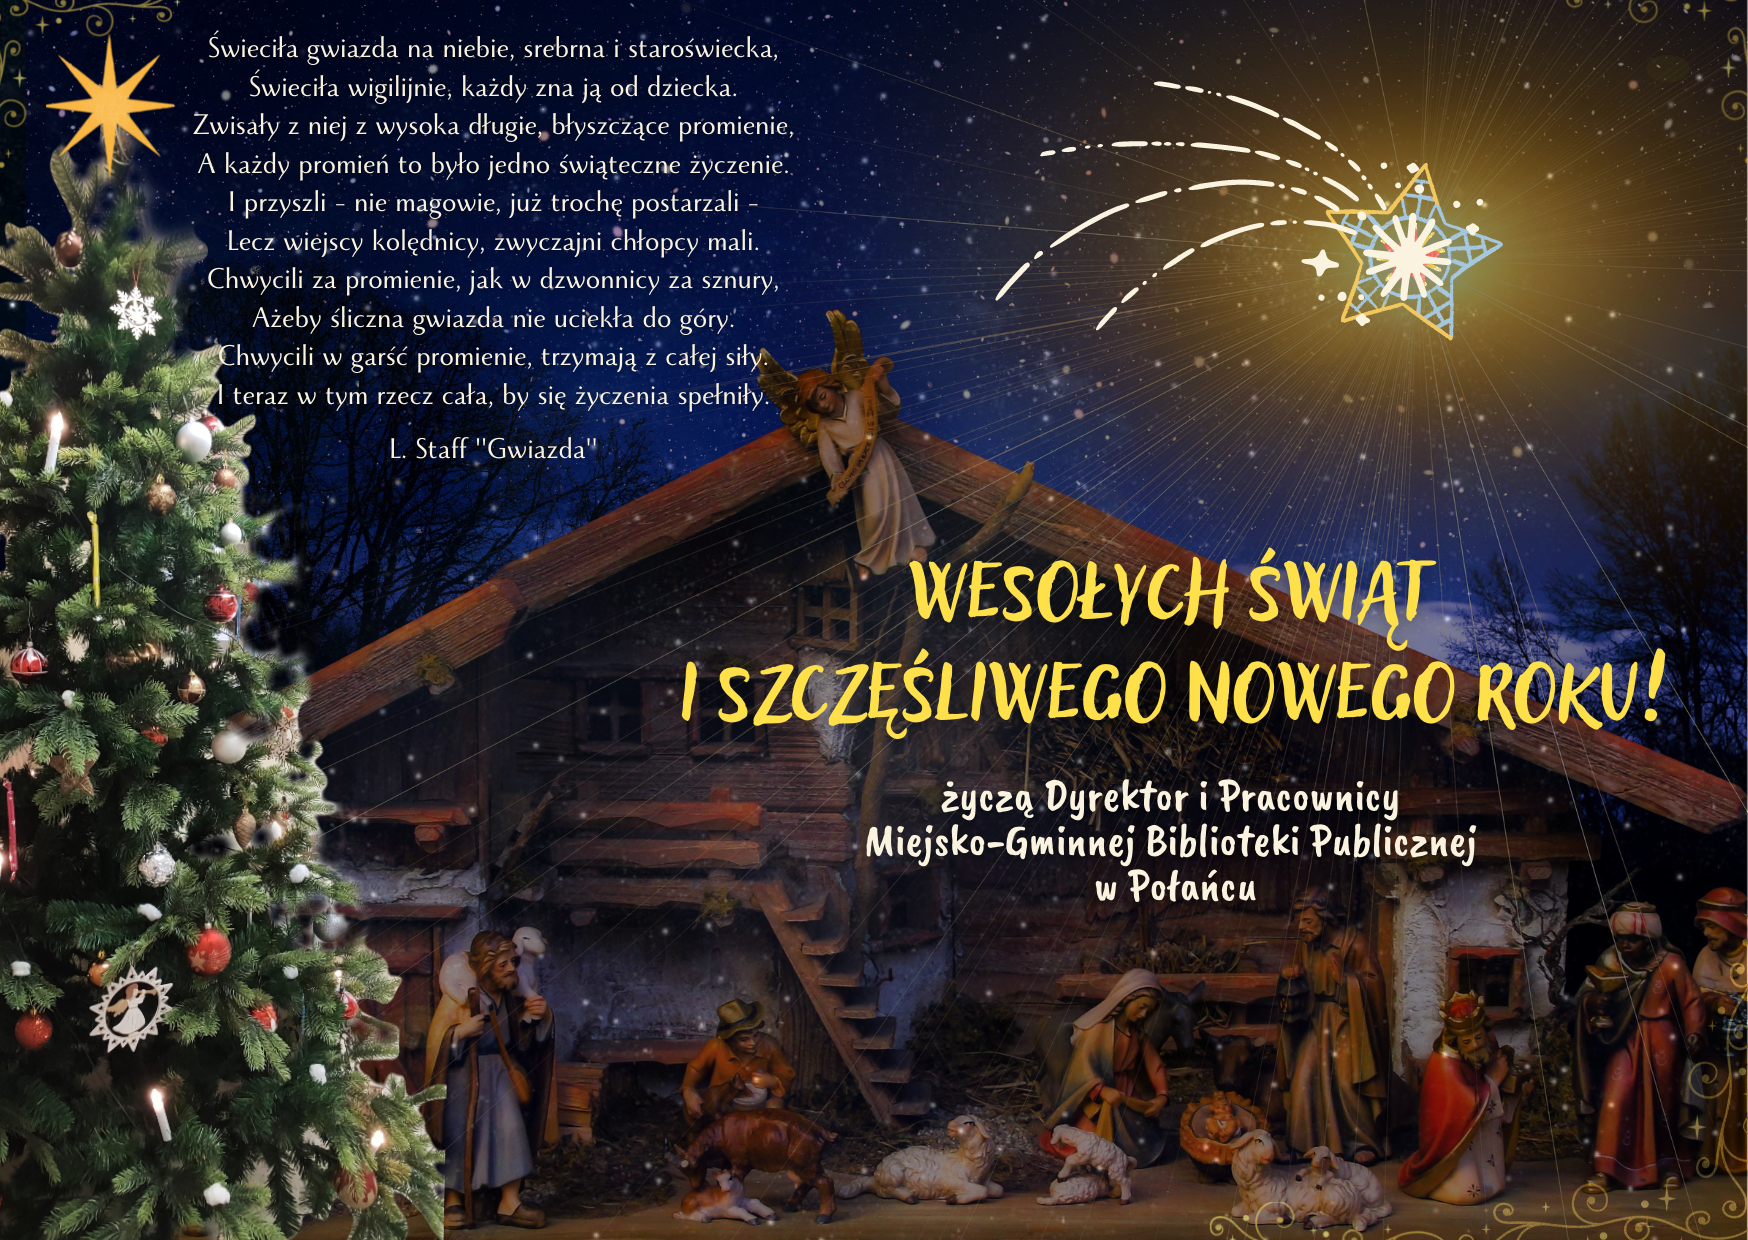 Kartka świąteczna, Wesołych Świąt i Szczęśliwego Nowego Roku życzą Dyrektor i Pracownicy Miejsko-Gminnej Biblioteki Publicznej w Połańcu